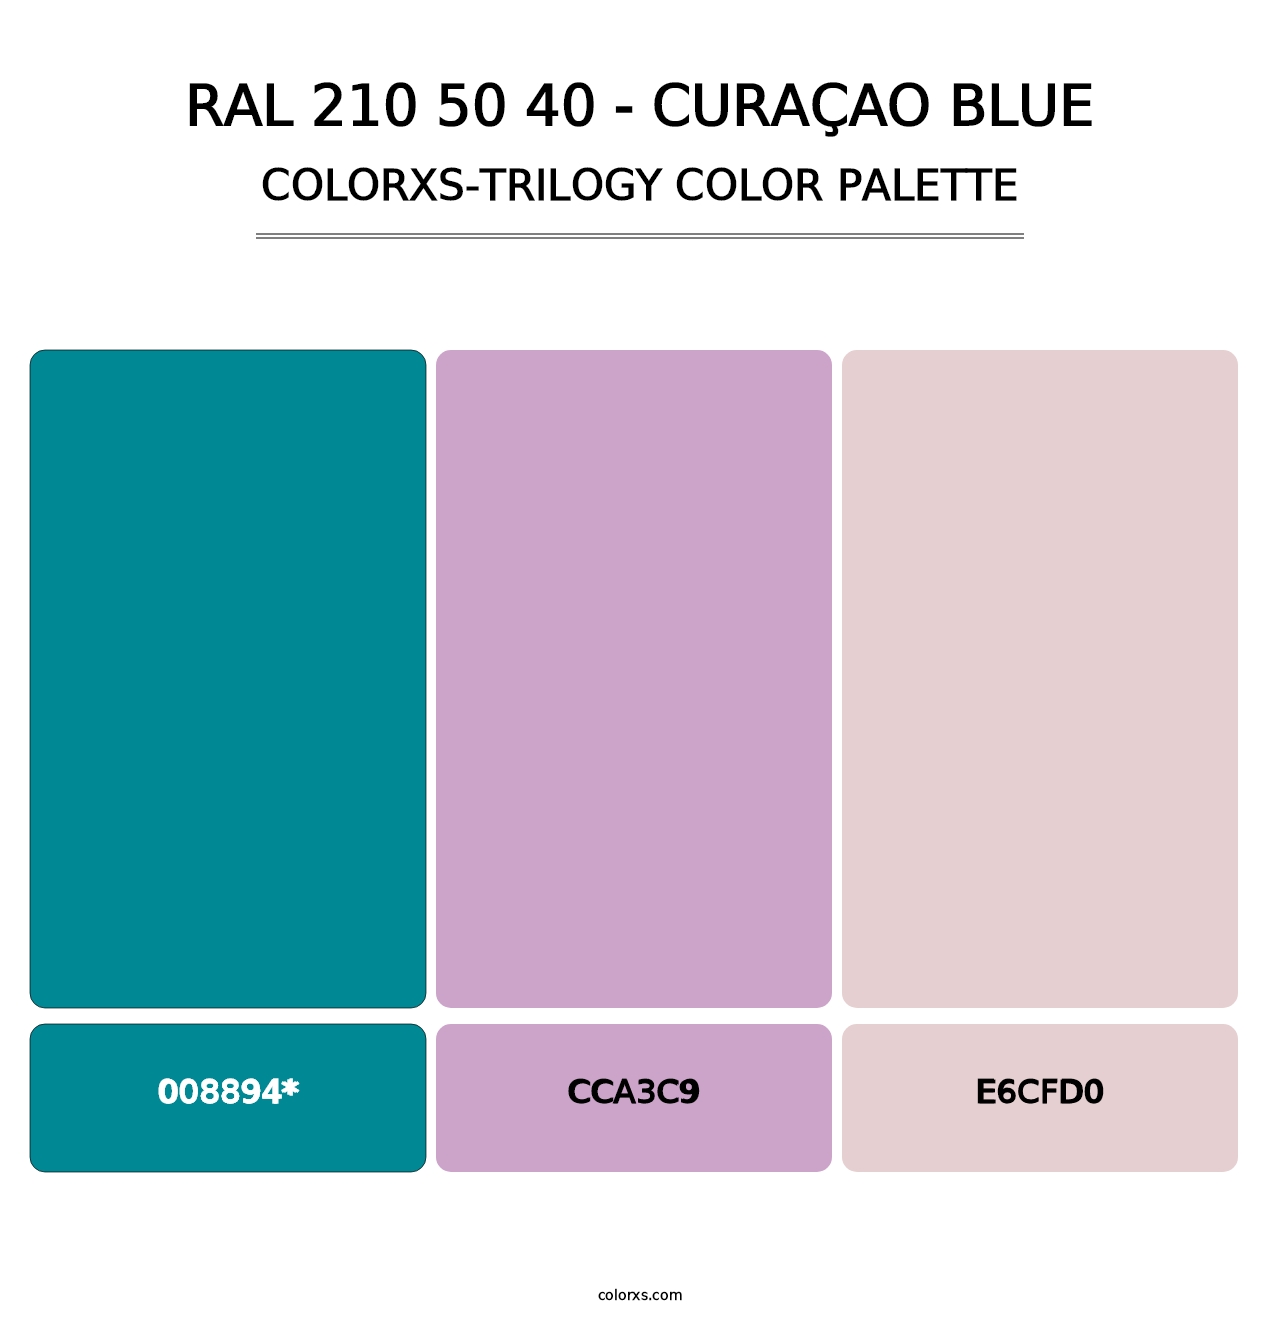 RAL 210 50 40 - Curaçao Blue - Colorxs Trilogy Palette